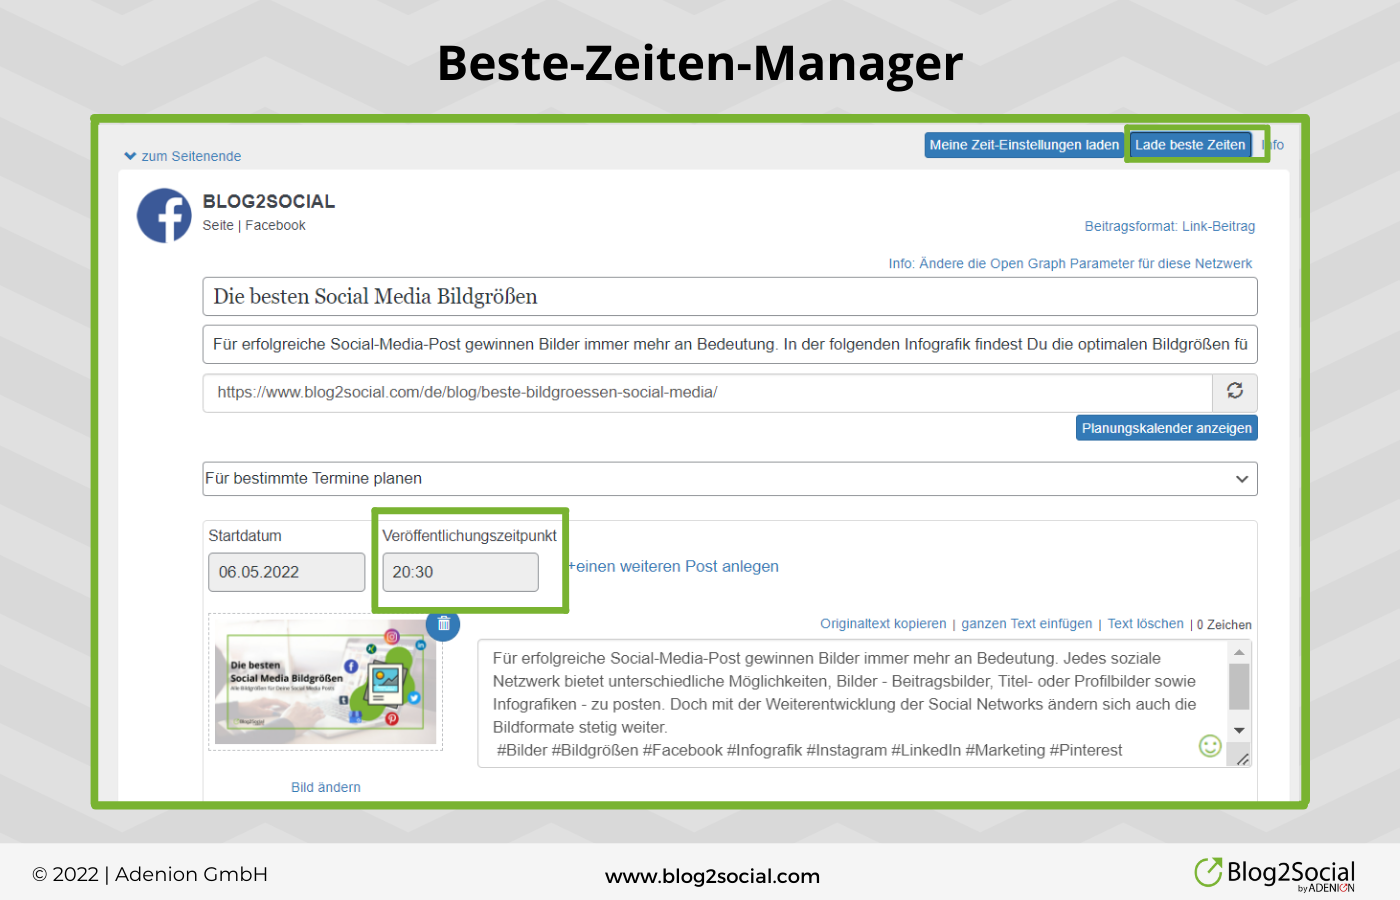 Zeit sparen mit Blog2Social: Beste-Zeiten-Manager